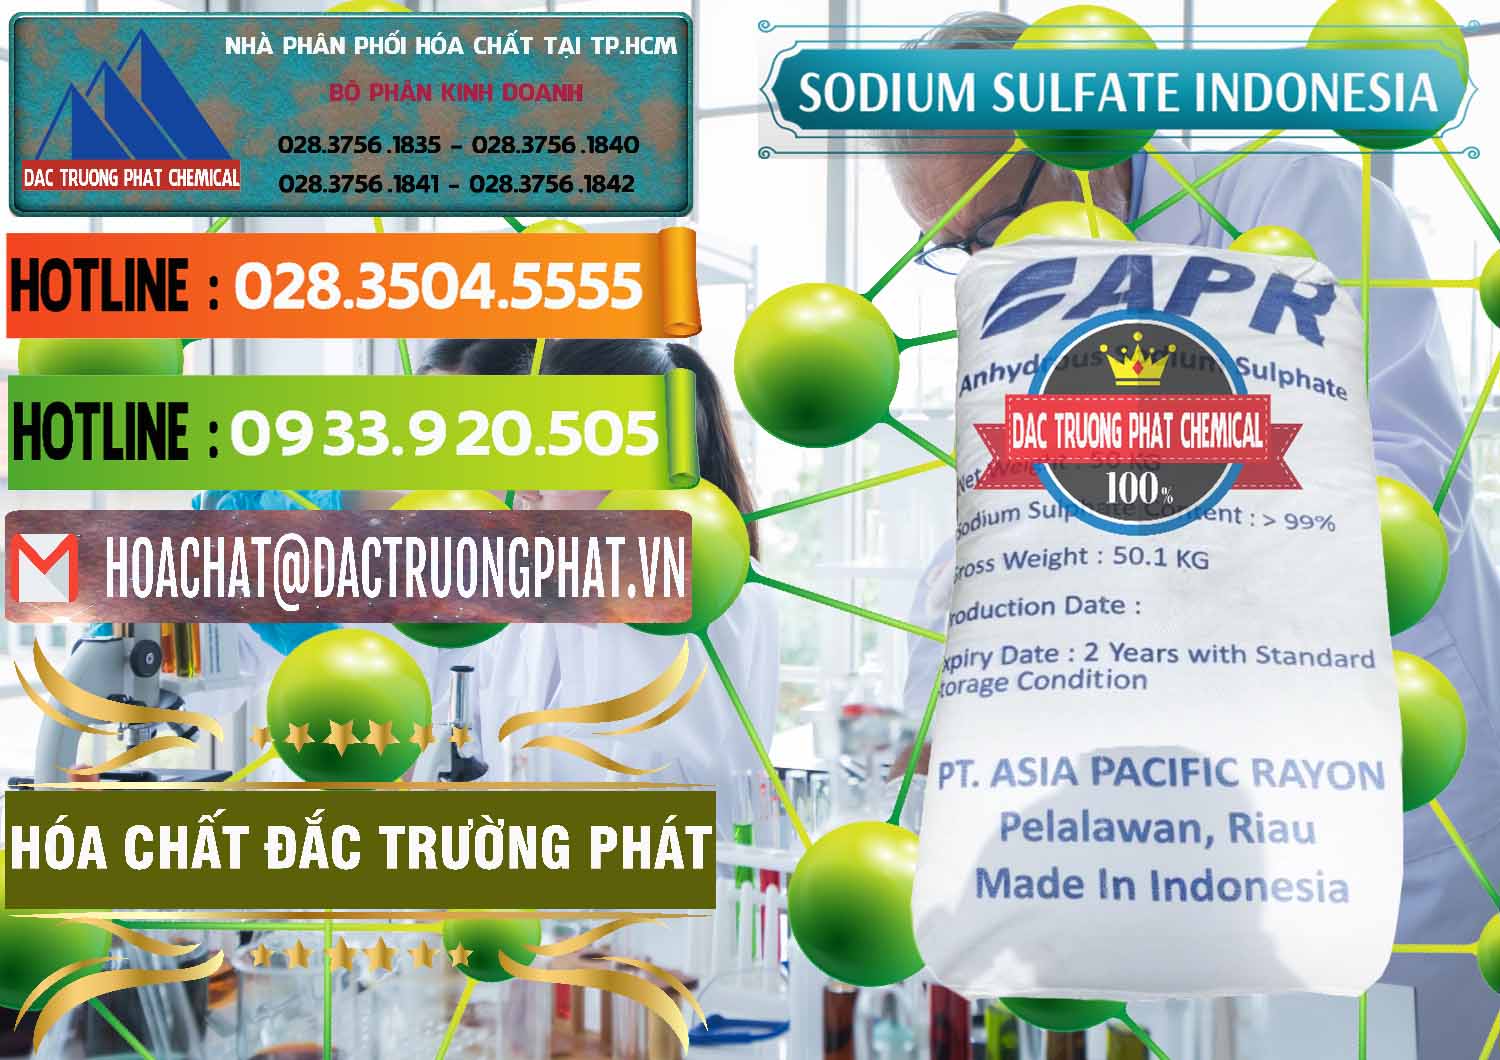 Cty nhập khẩu và bán Sodium Sulphate - Muối Sunfat Na2SO4 APR Indonesia - 0460 - Chuyên phân phối - cung cấp hóa chất tại TP.HCM - cungcaphoachat.com.vn